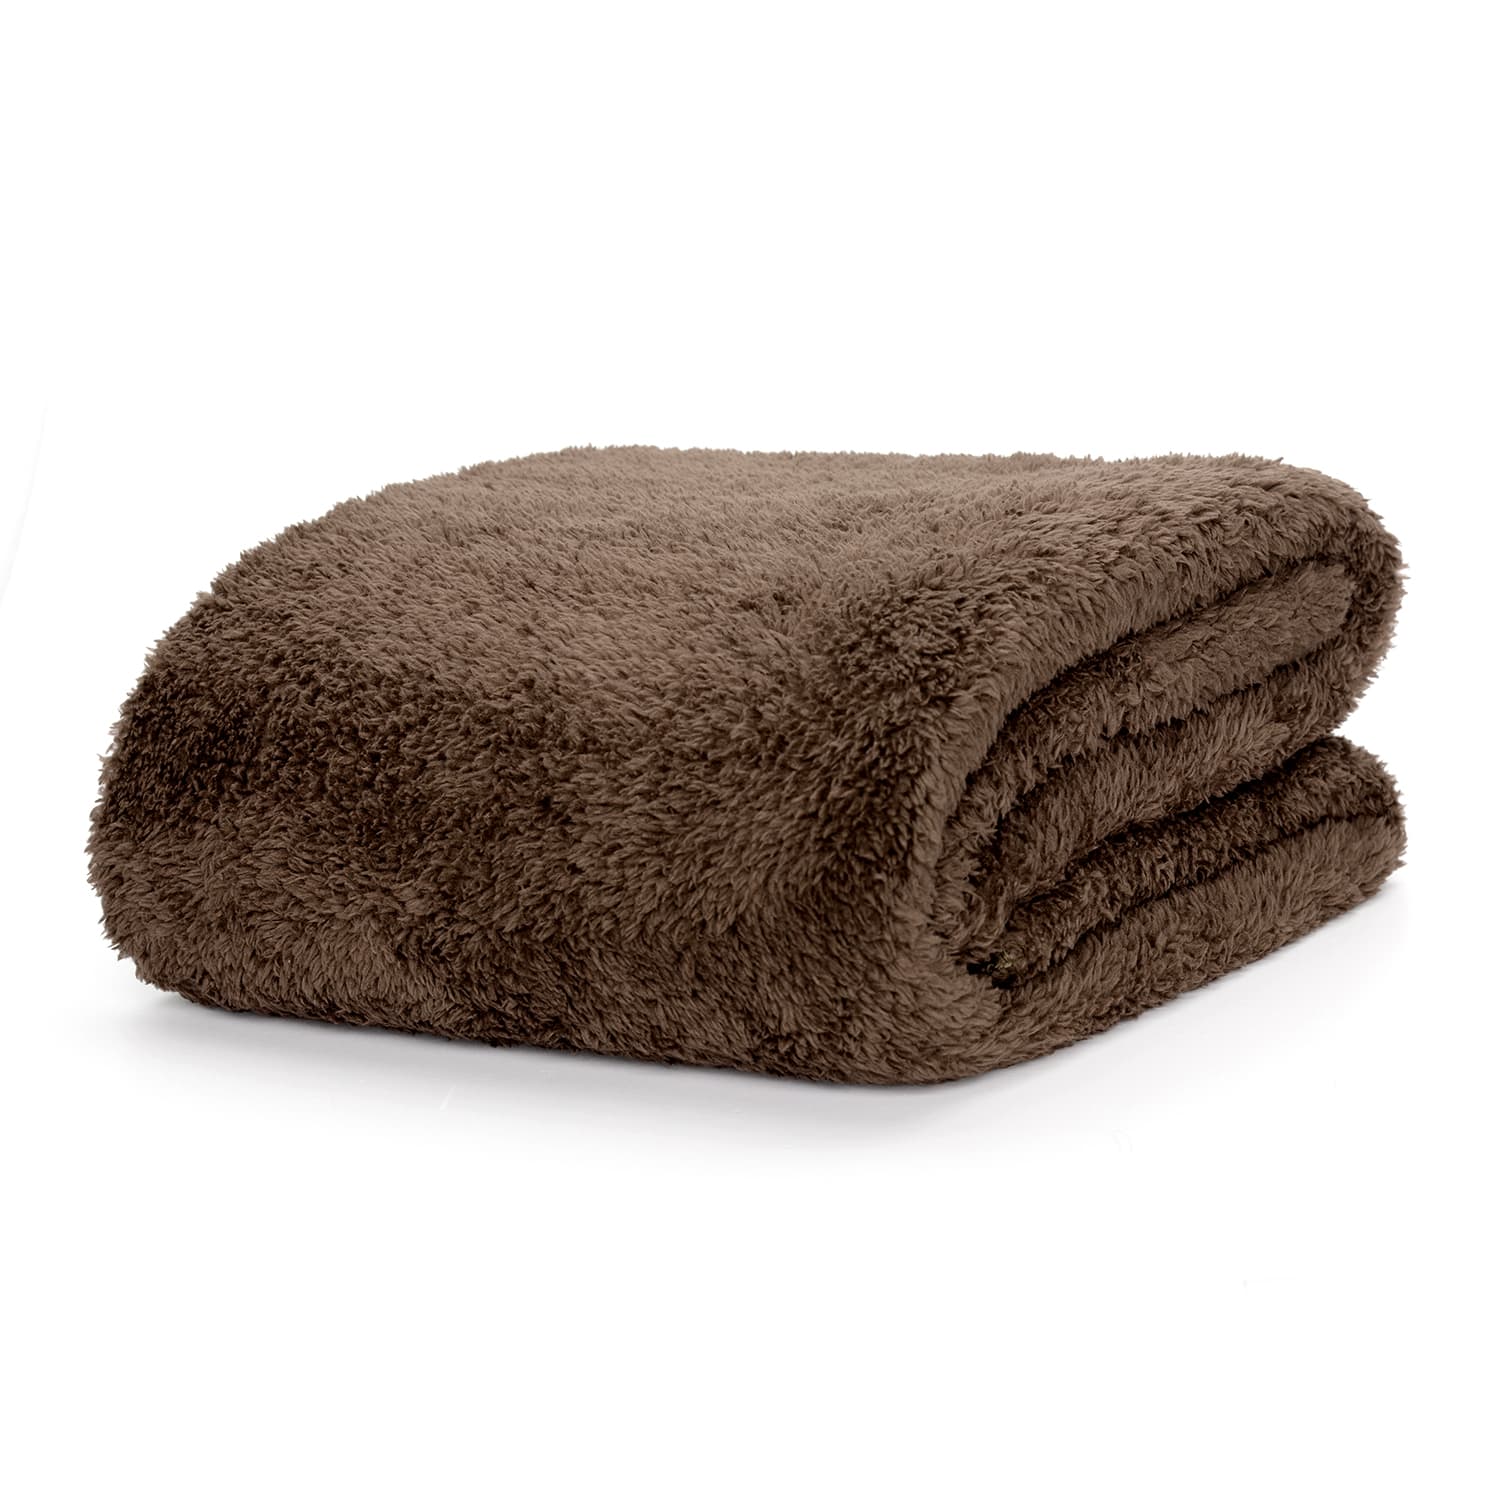 Snug-Rug Sherpa Throw Blanket (Chocolate Brown)